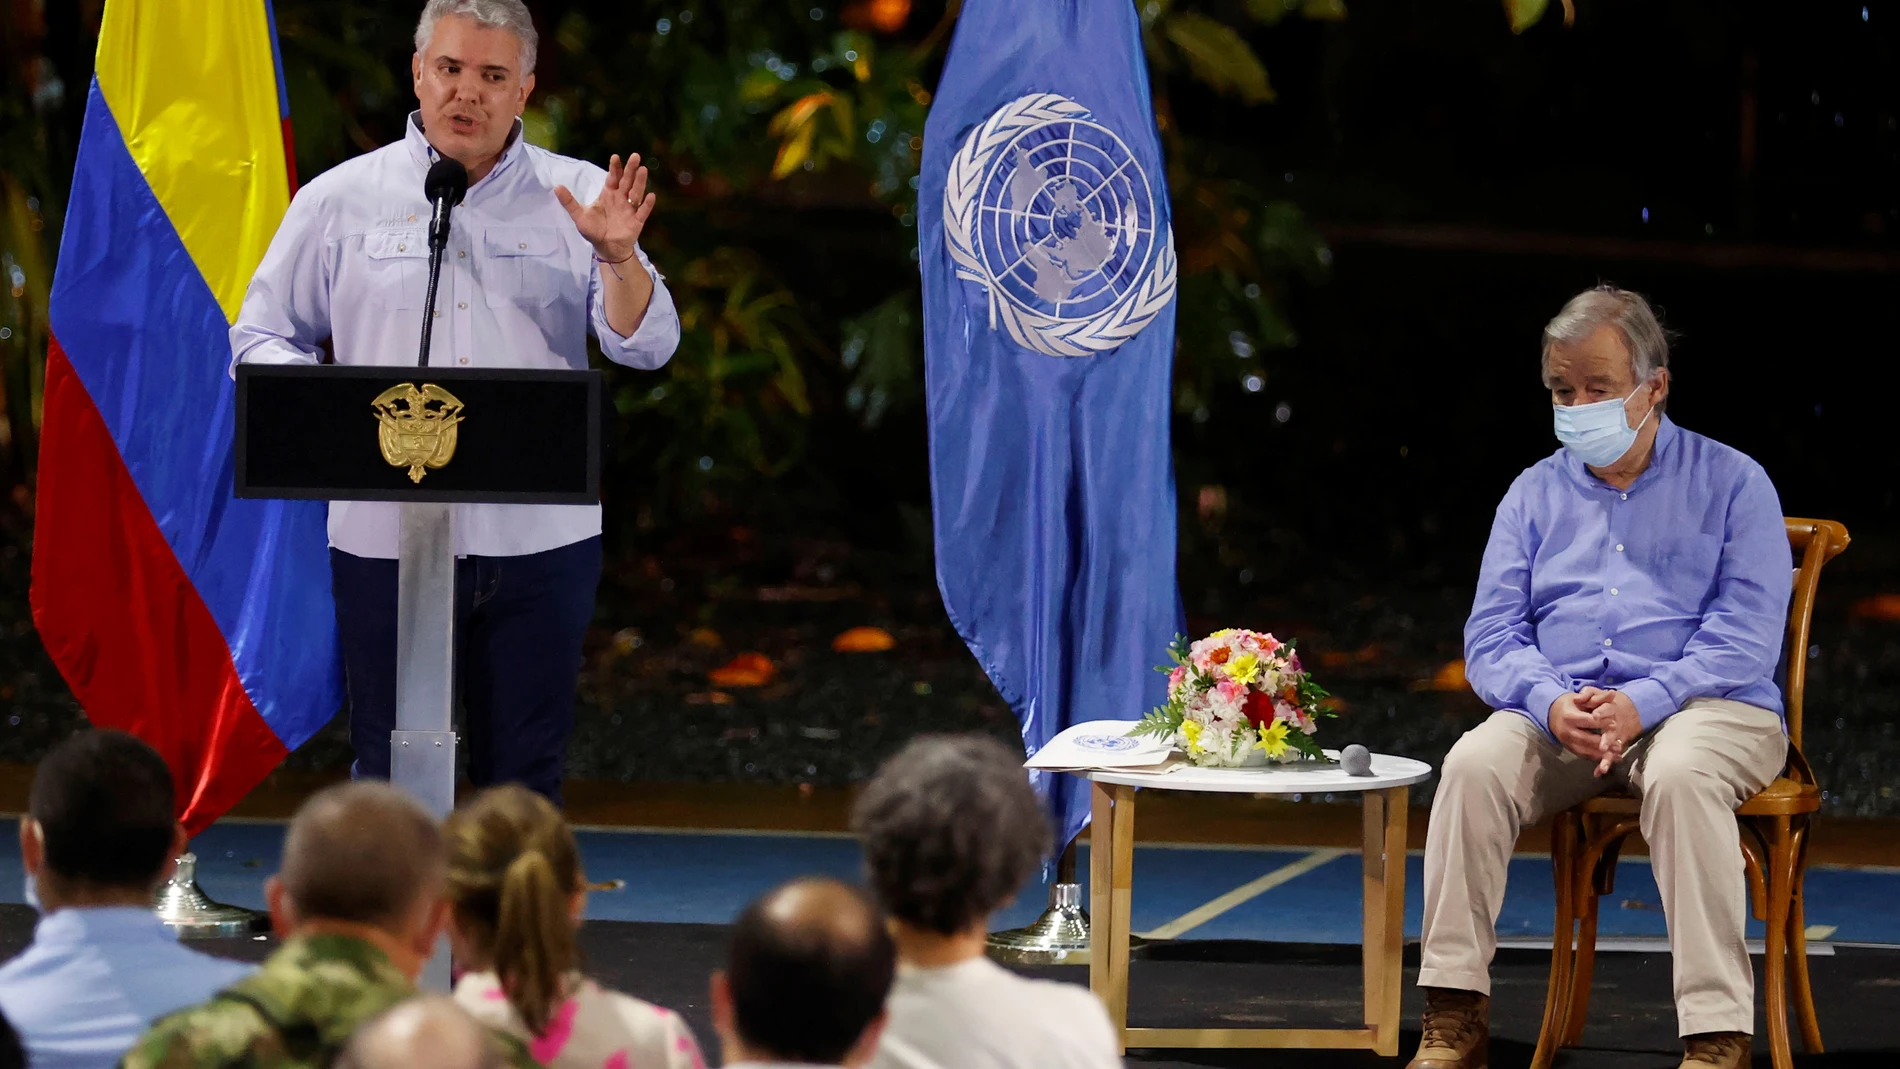 AME9975. APARTADÓ (COLOMBIA), 23/11/2021.- El presidente de Colombia, Iván Duque (i), habla junto al secretario general de la ONU, Antonio Guterres (d), durante un acto en el marco de la conmemoración del quinto aniversario de la firma del acuerdo definitivo de paz entre el Gobierno colombiano y las FARC, hoy, en Apartadó (Colombia). Guterres mostró este martes su preocupación porque varias regiones de Colombia siguen afectadas por la "inseguridad" y dijo que los asesinatos de excombatientes de las FARC y de líderes sociales "funden las esperanzas de las comunidades". Guterres, que visitó junto a Duque, otros representantes del Gobierno, miembros de la extinta guerrilla de las FARC y de organizaciones civiles el departamento de Antioquia (noroeste), mostró su compromiso con el acuerdo de paz, de cuya firma se cumplen mañana cinco años. EFE/ Mauricio Dueñas Castañeda